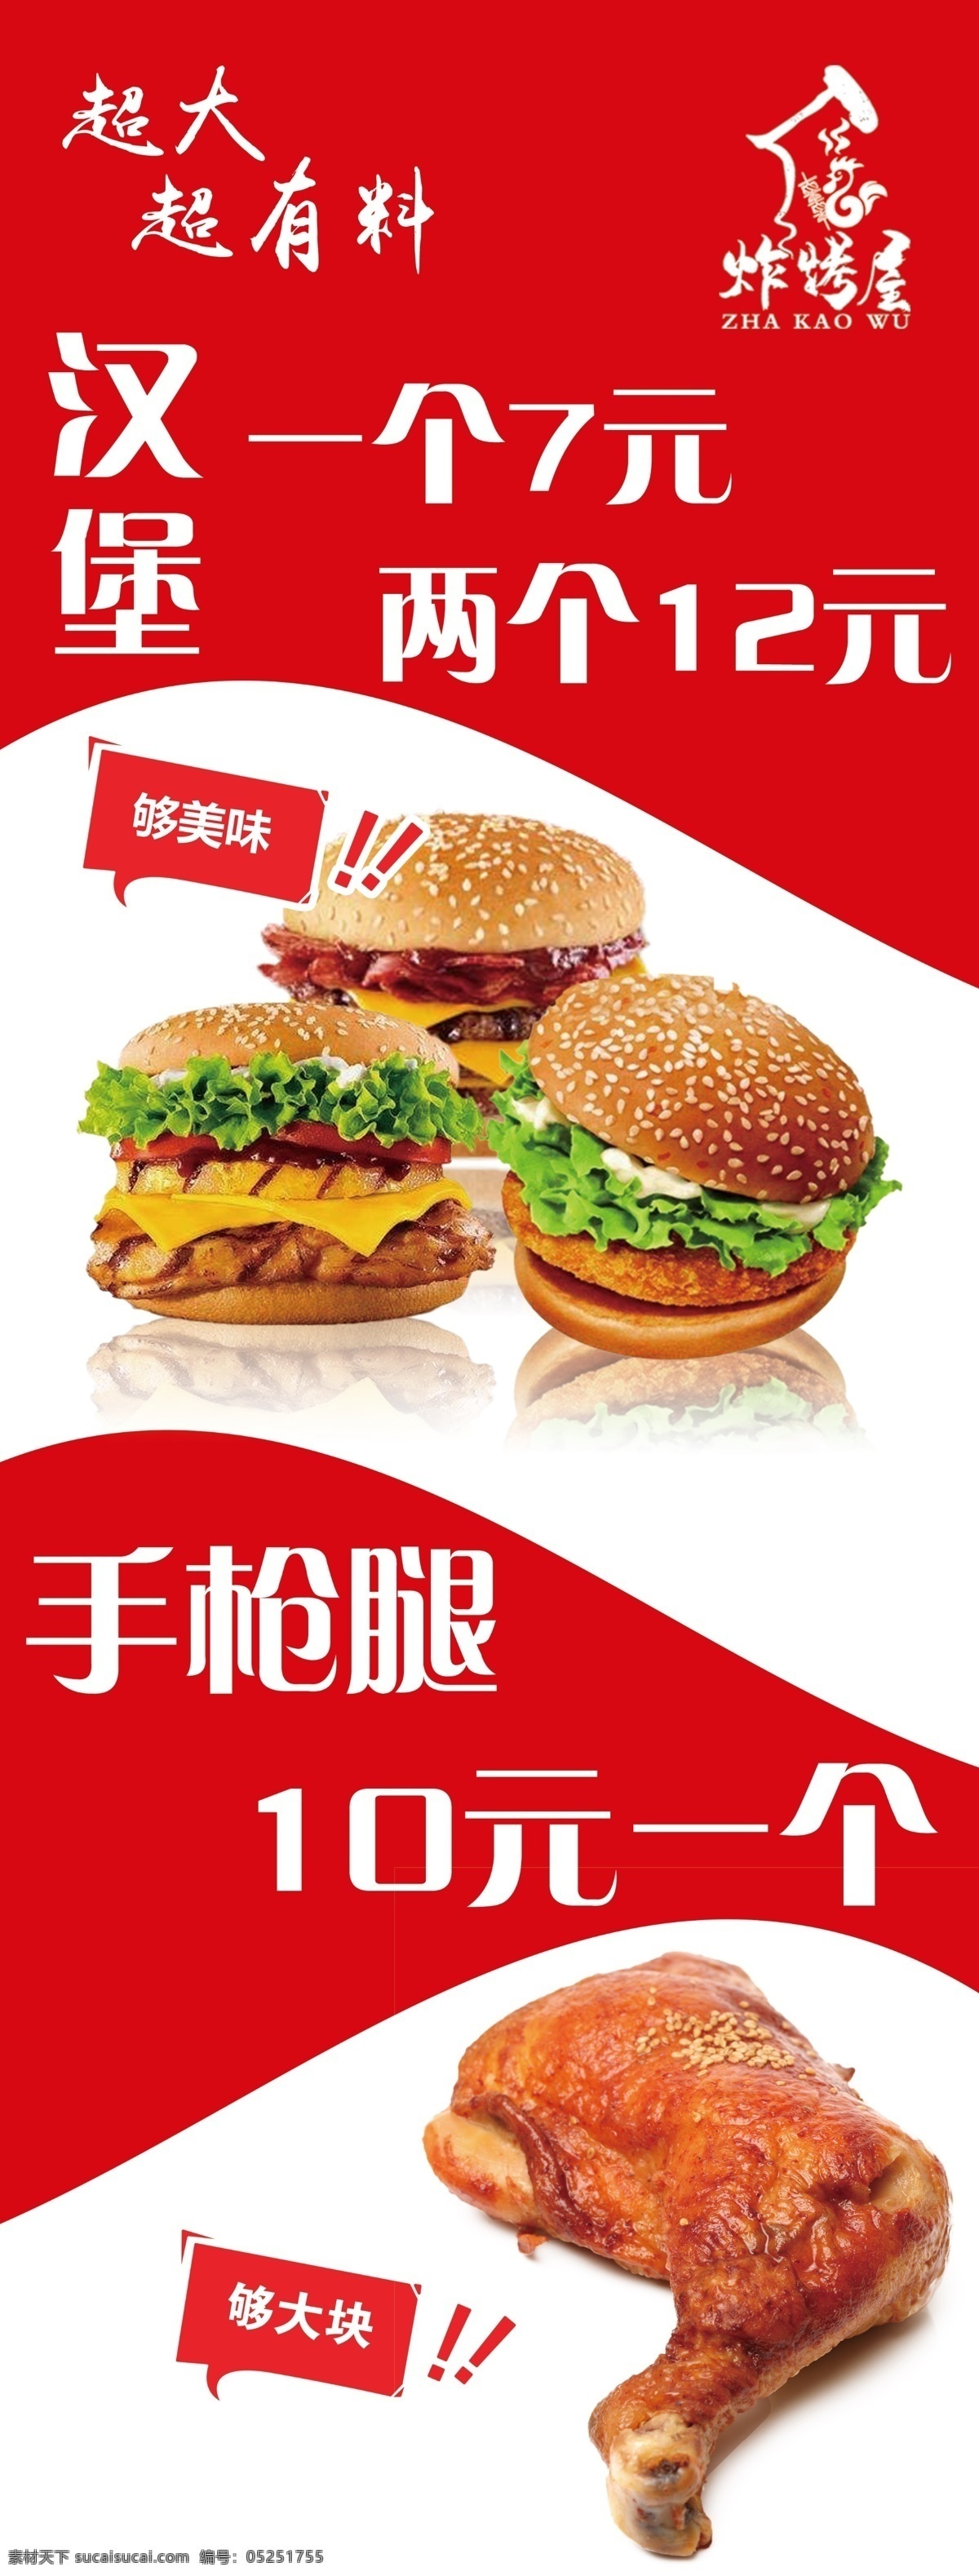 汉堡 炸鸡 门贴 小吃 展架图片 鸡腿 菜单 高清 装饰 海报